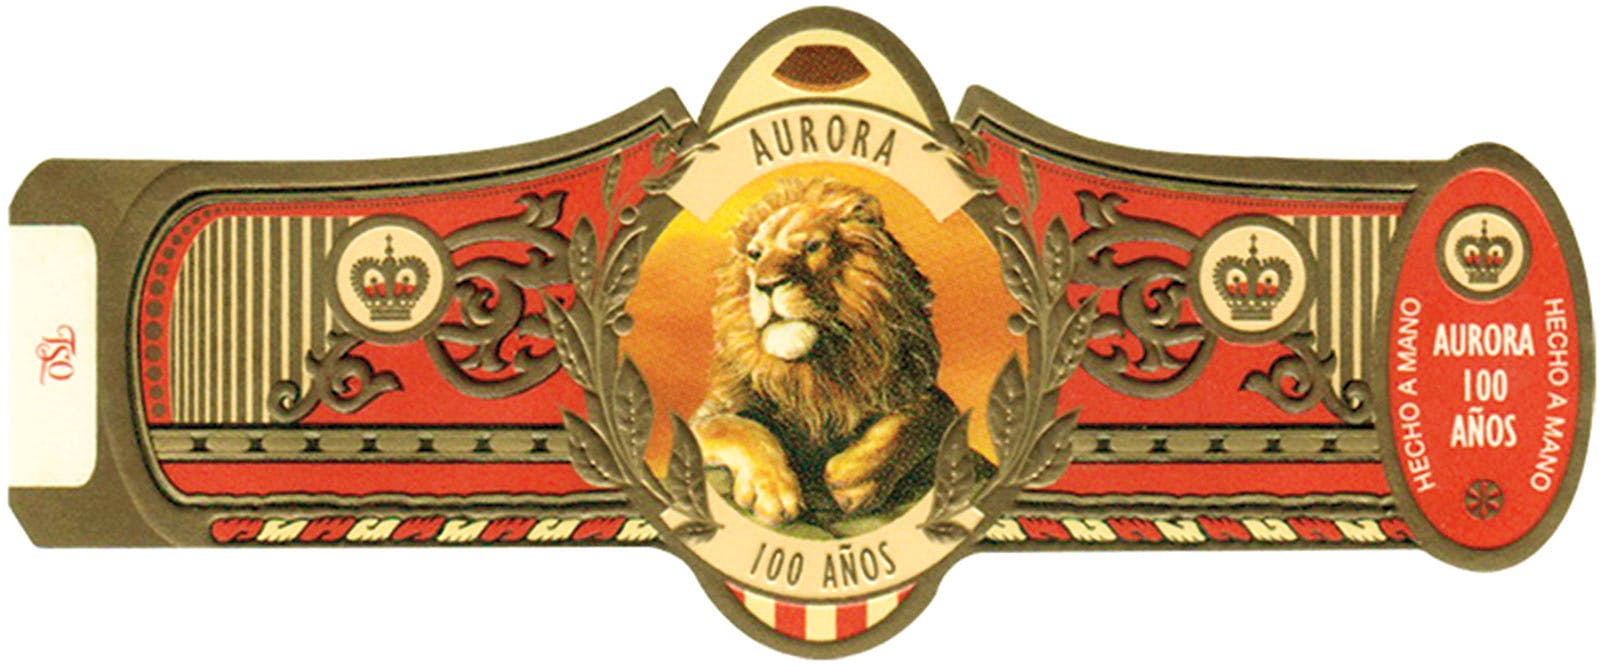 La Aurora 100 Años No. 4 (2005)